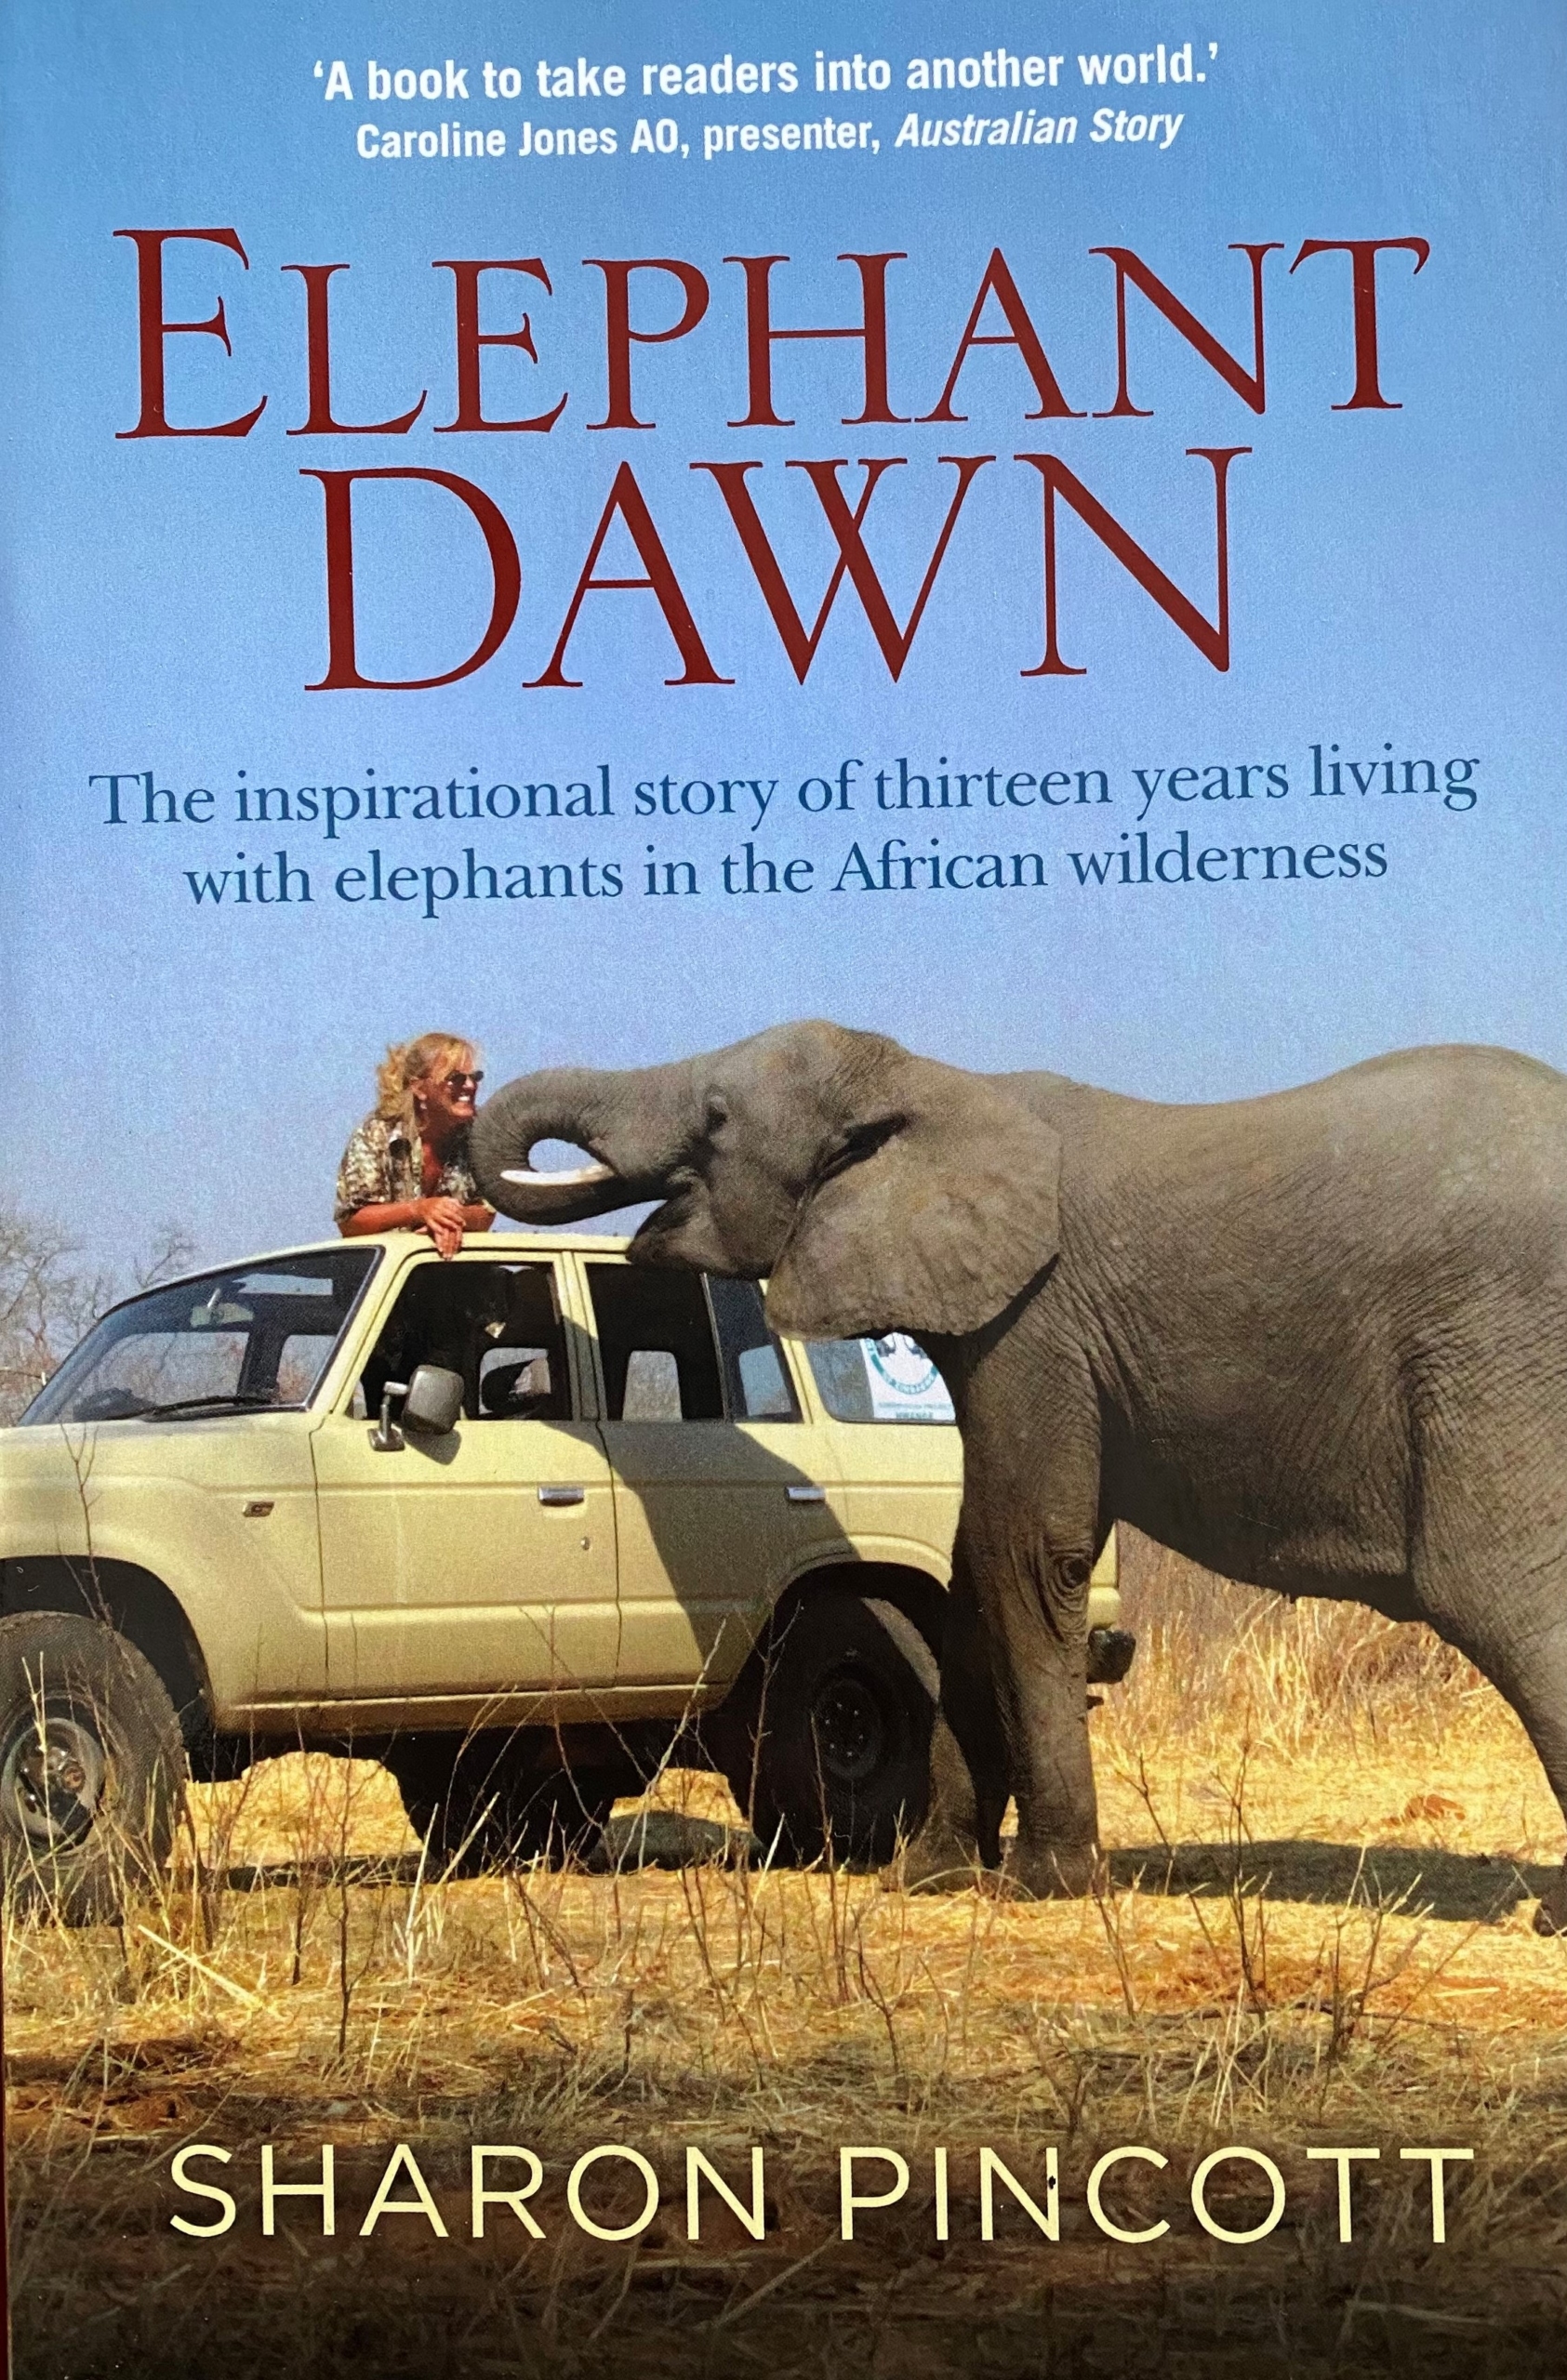 Elephant Dawn by Sharon Pincott